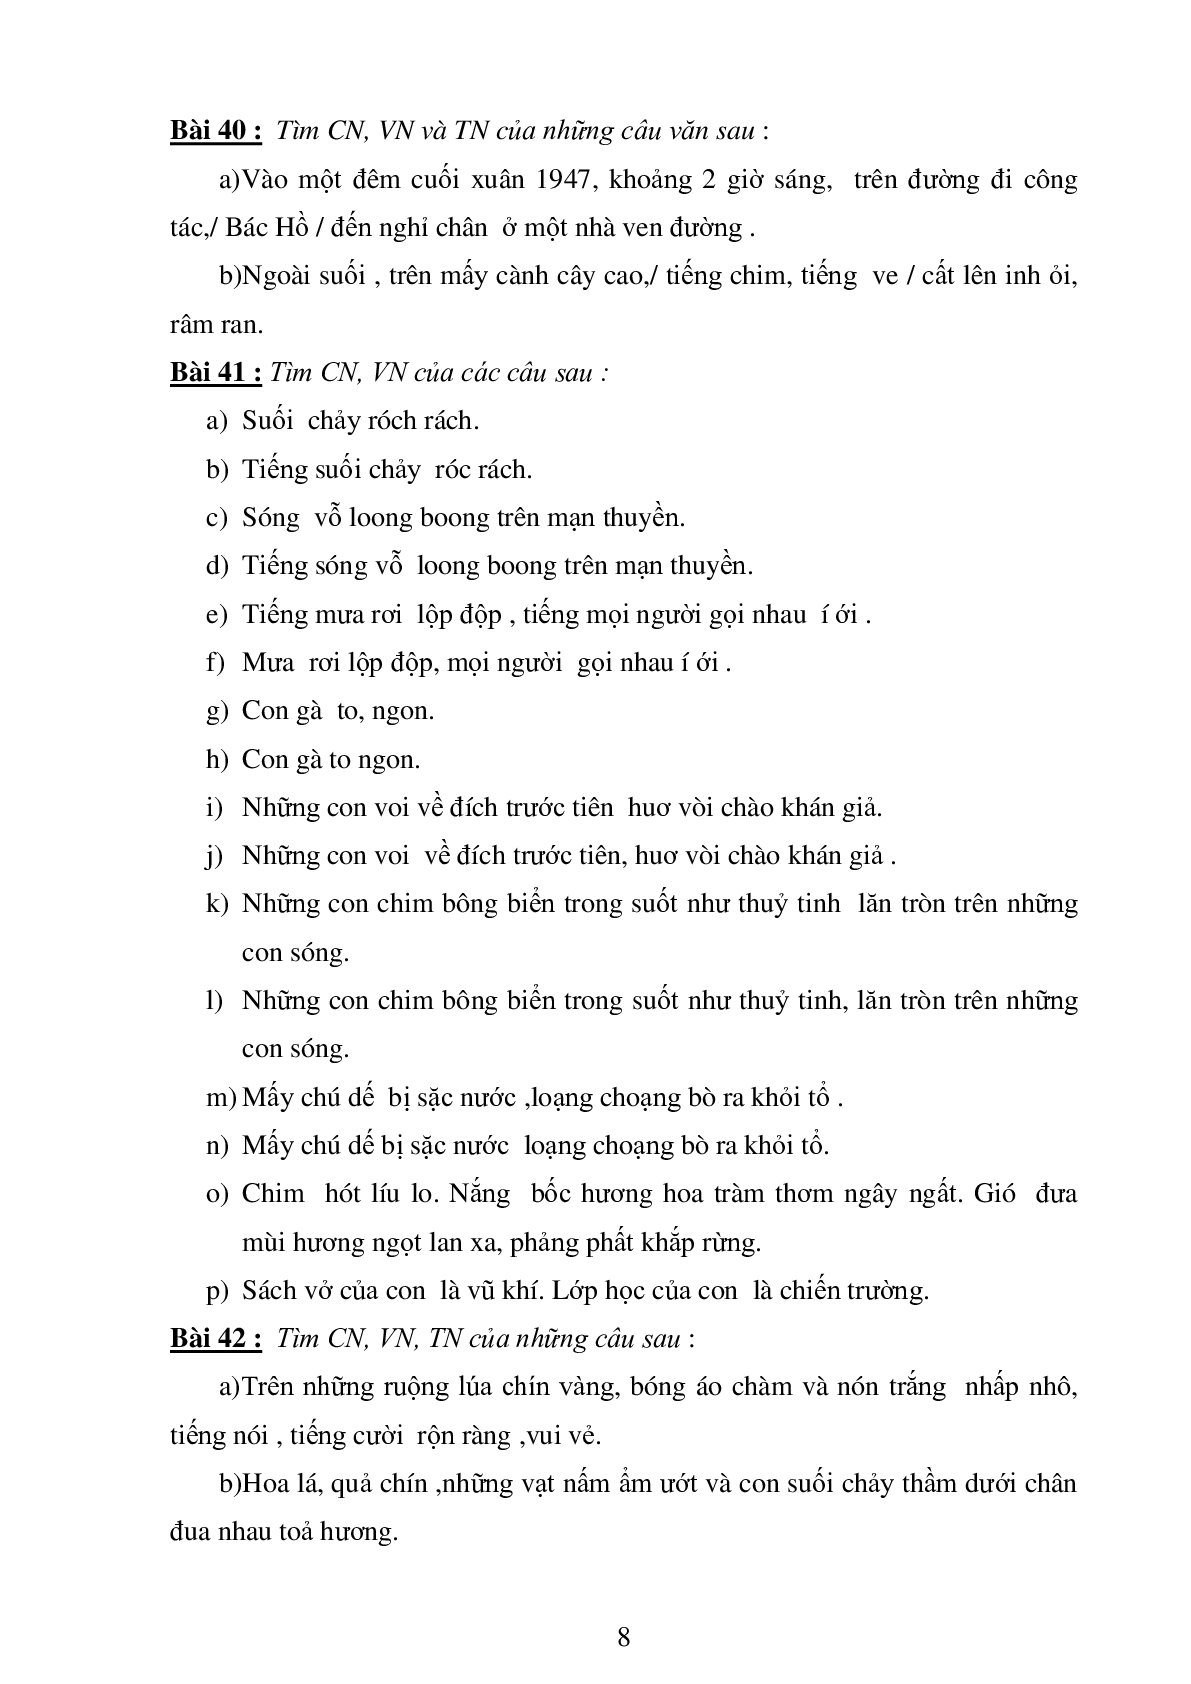 74 bài tập luyện từ và câu môn Tiếng Việt lớp 4 (trang 8)